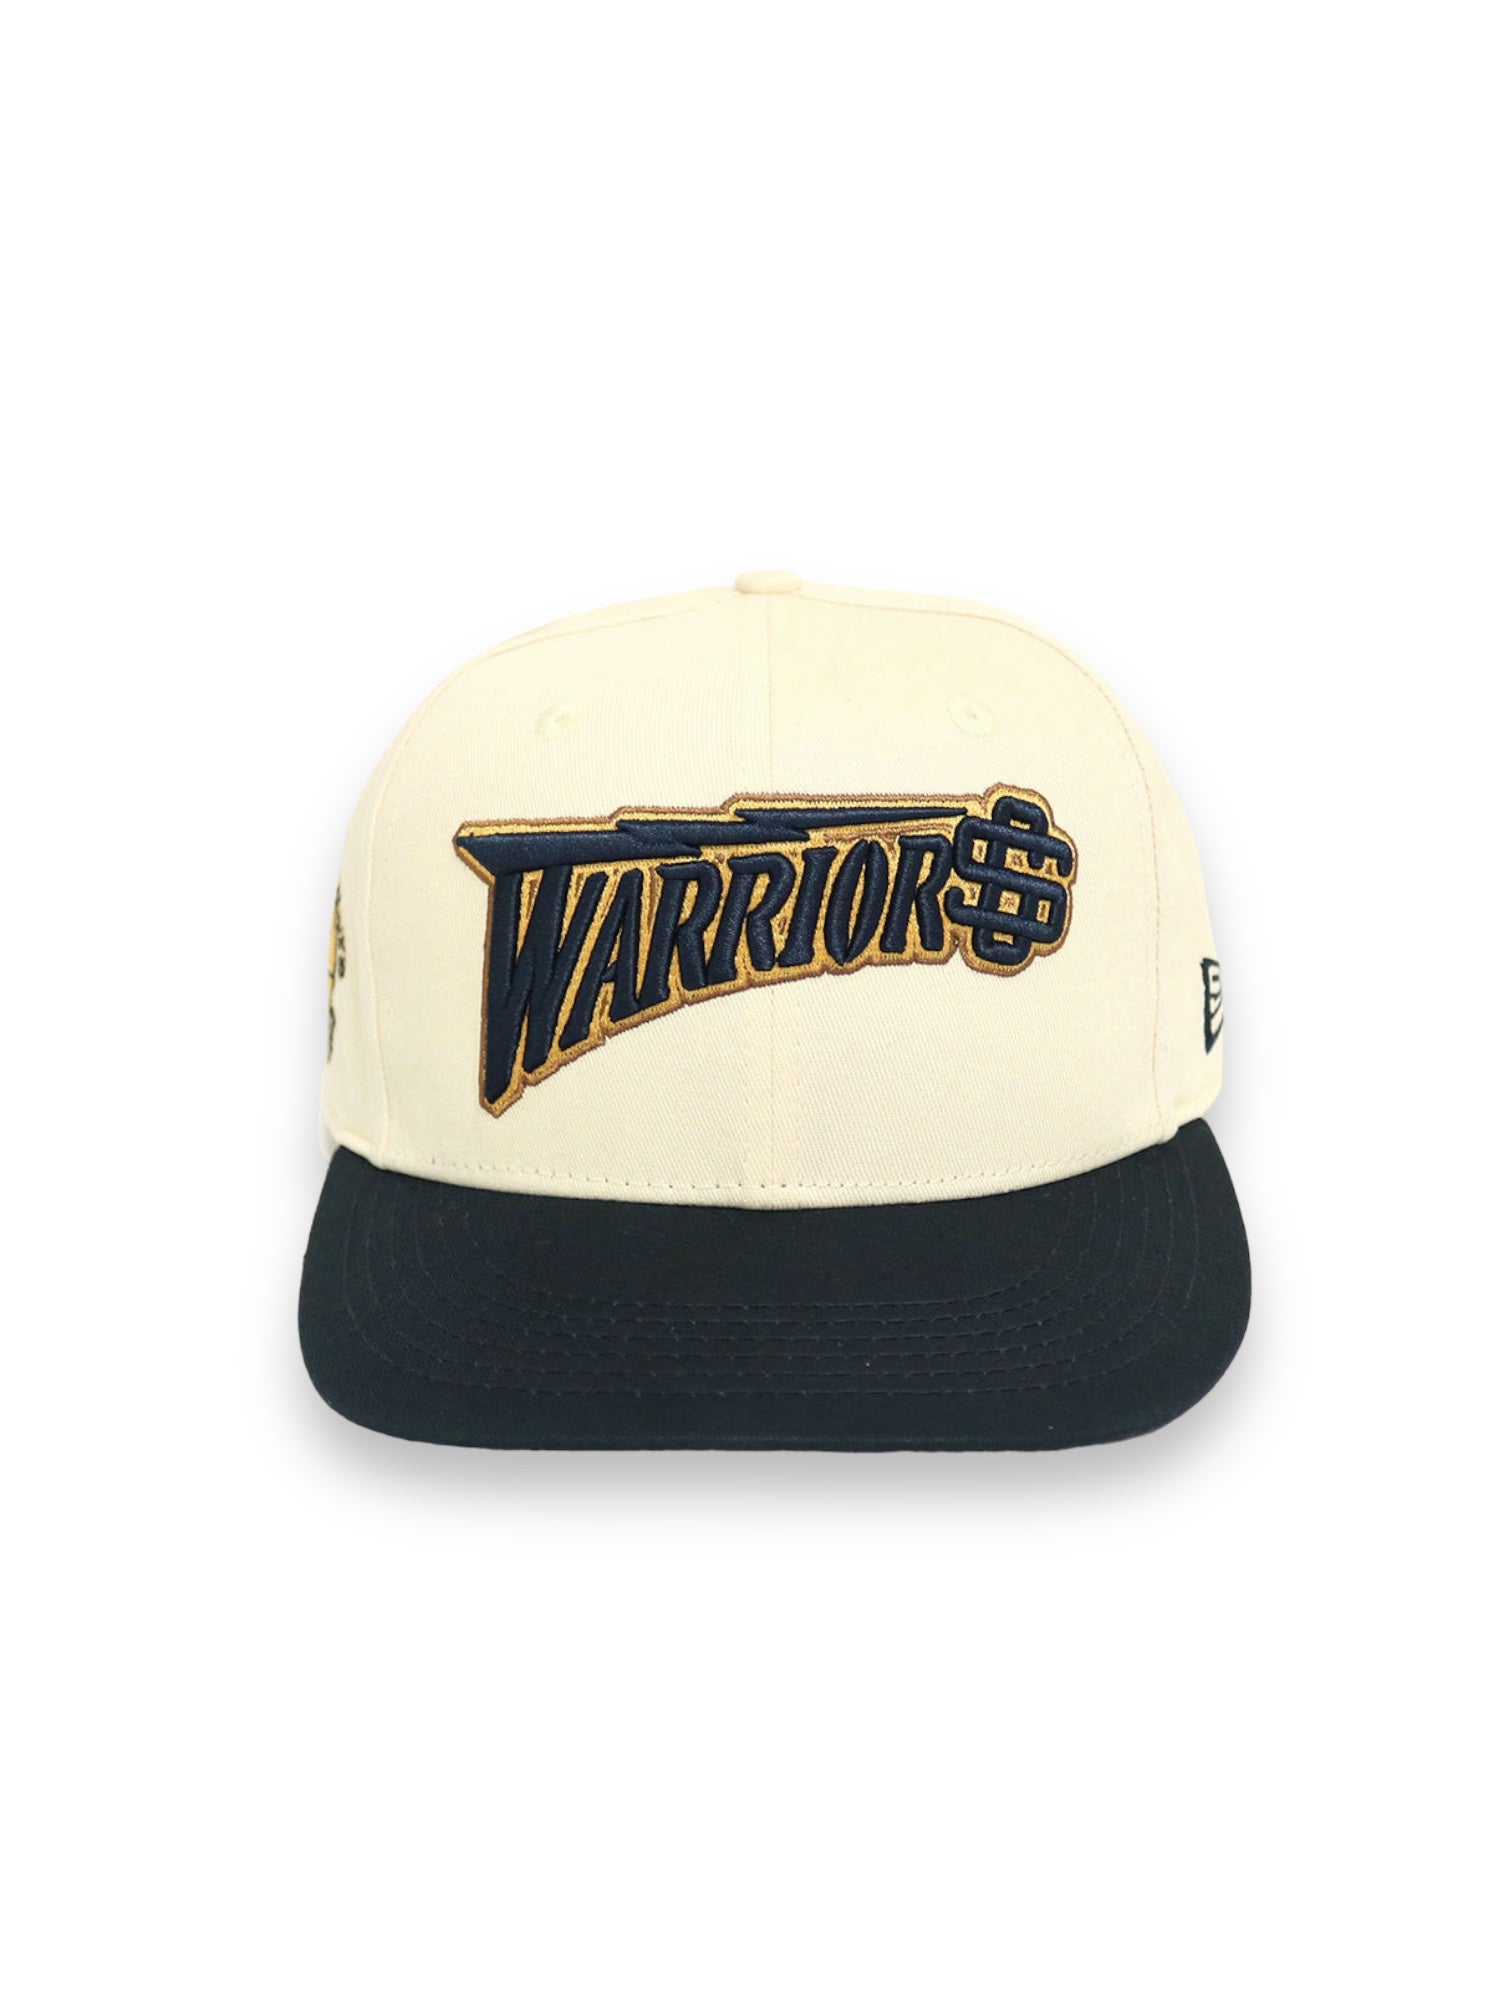 Warriors hat